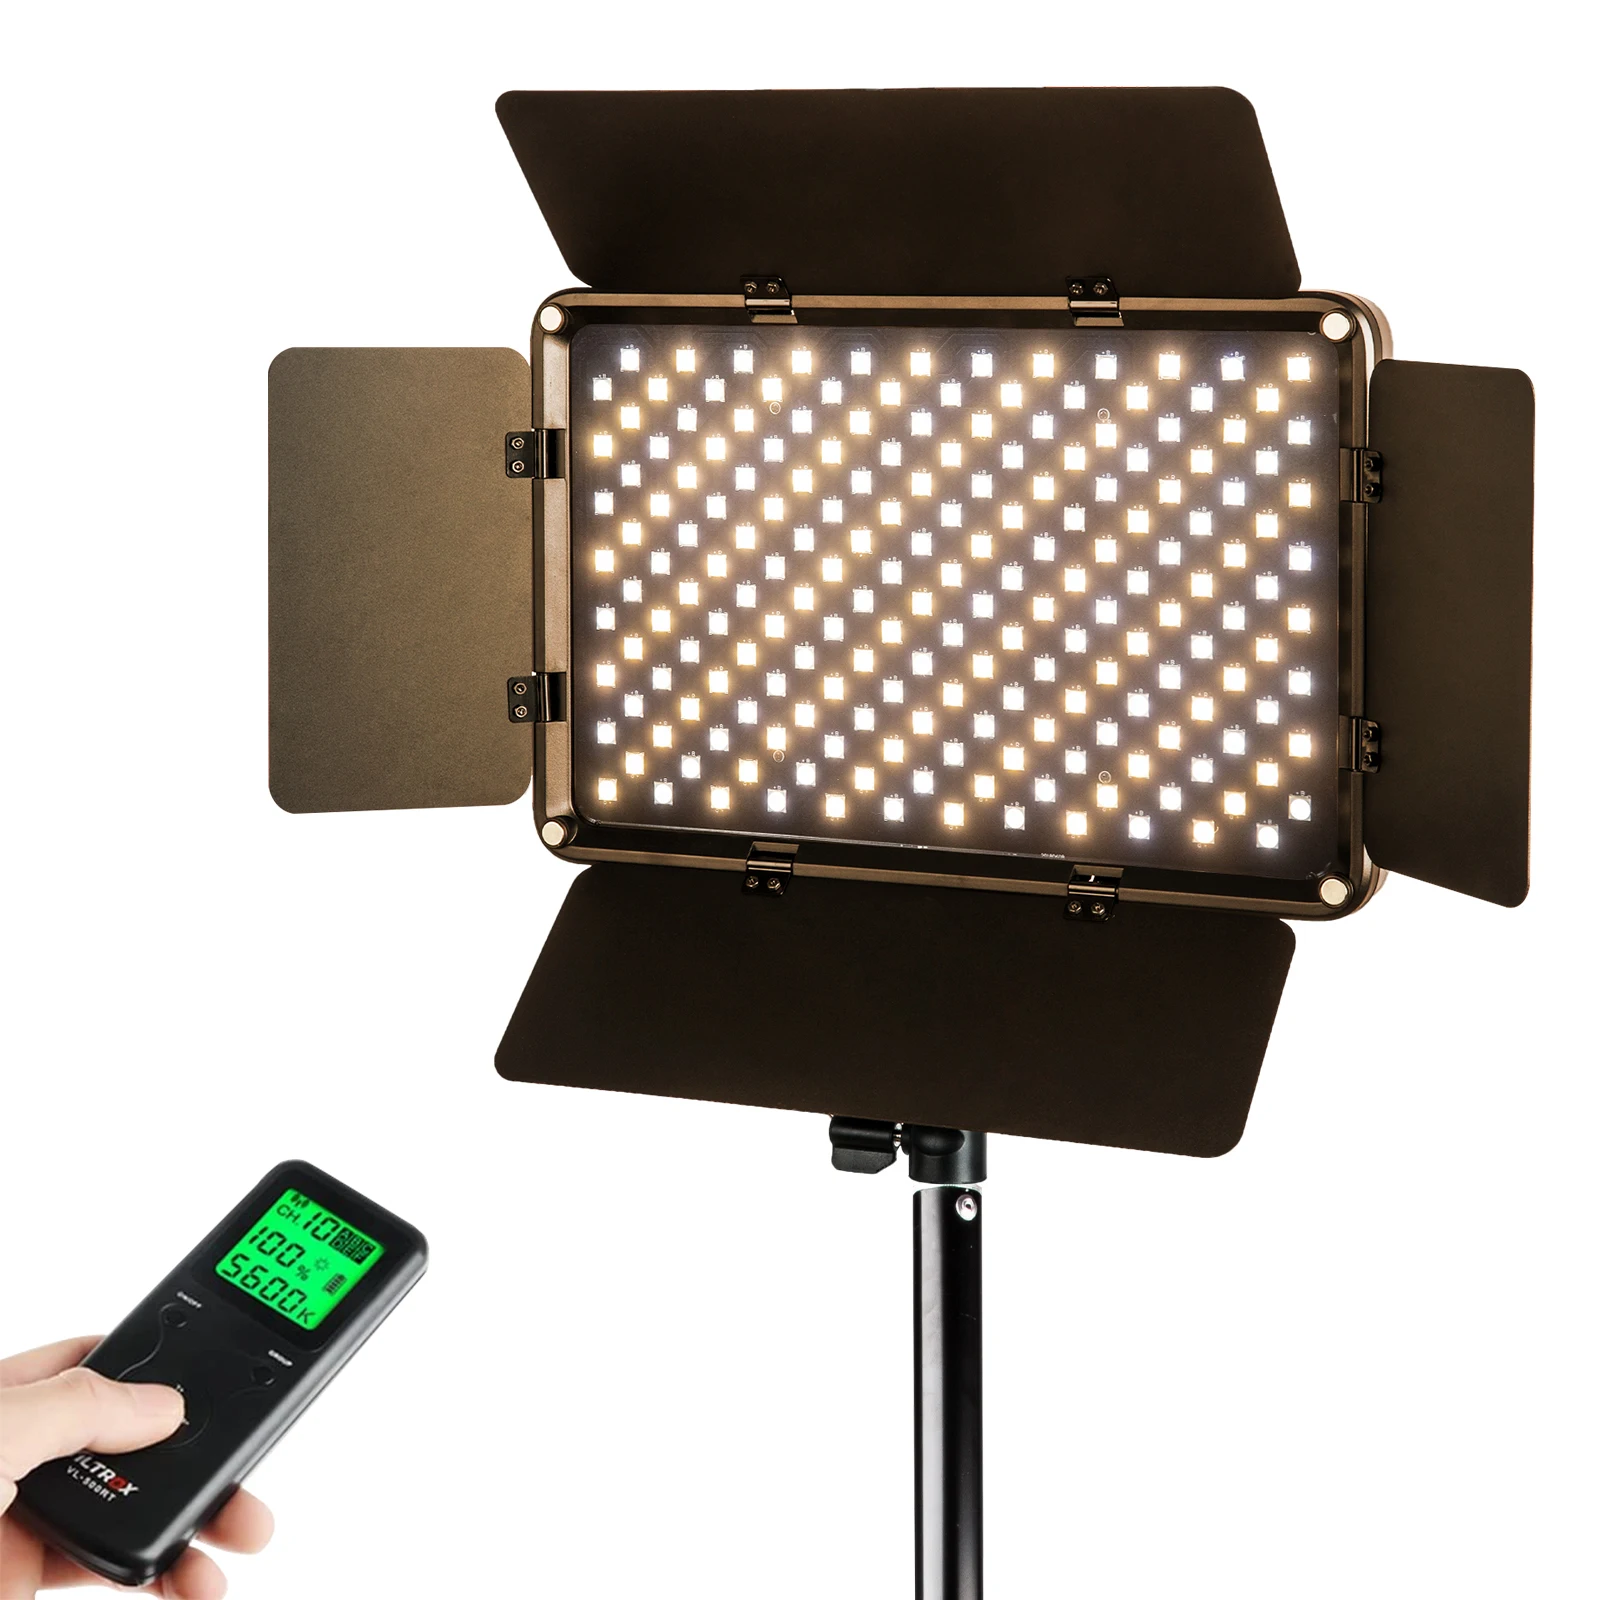 Viltrox 3 шт. VL-S192T Светодиодная лампа для камеры светодиодсветильник ная панель для видеосъемки двухцветная Регулируемая яркость освещение ко...